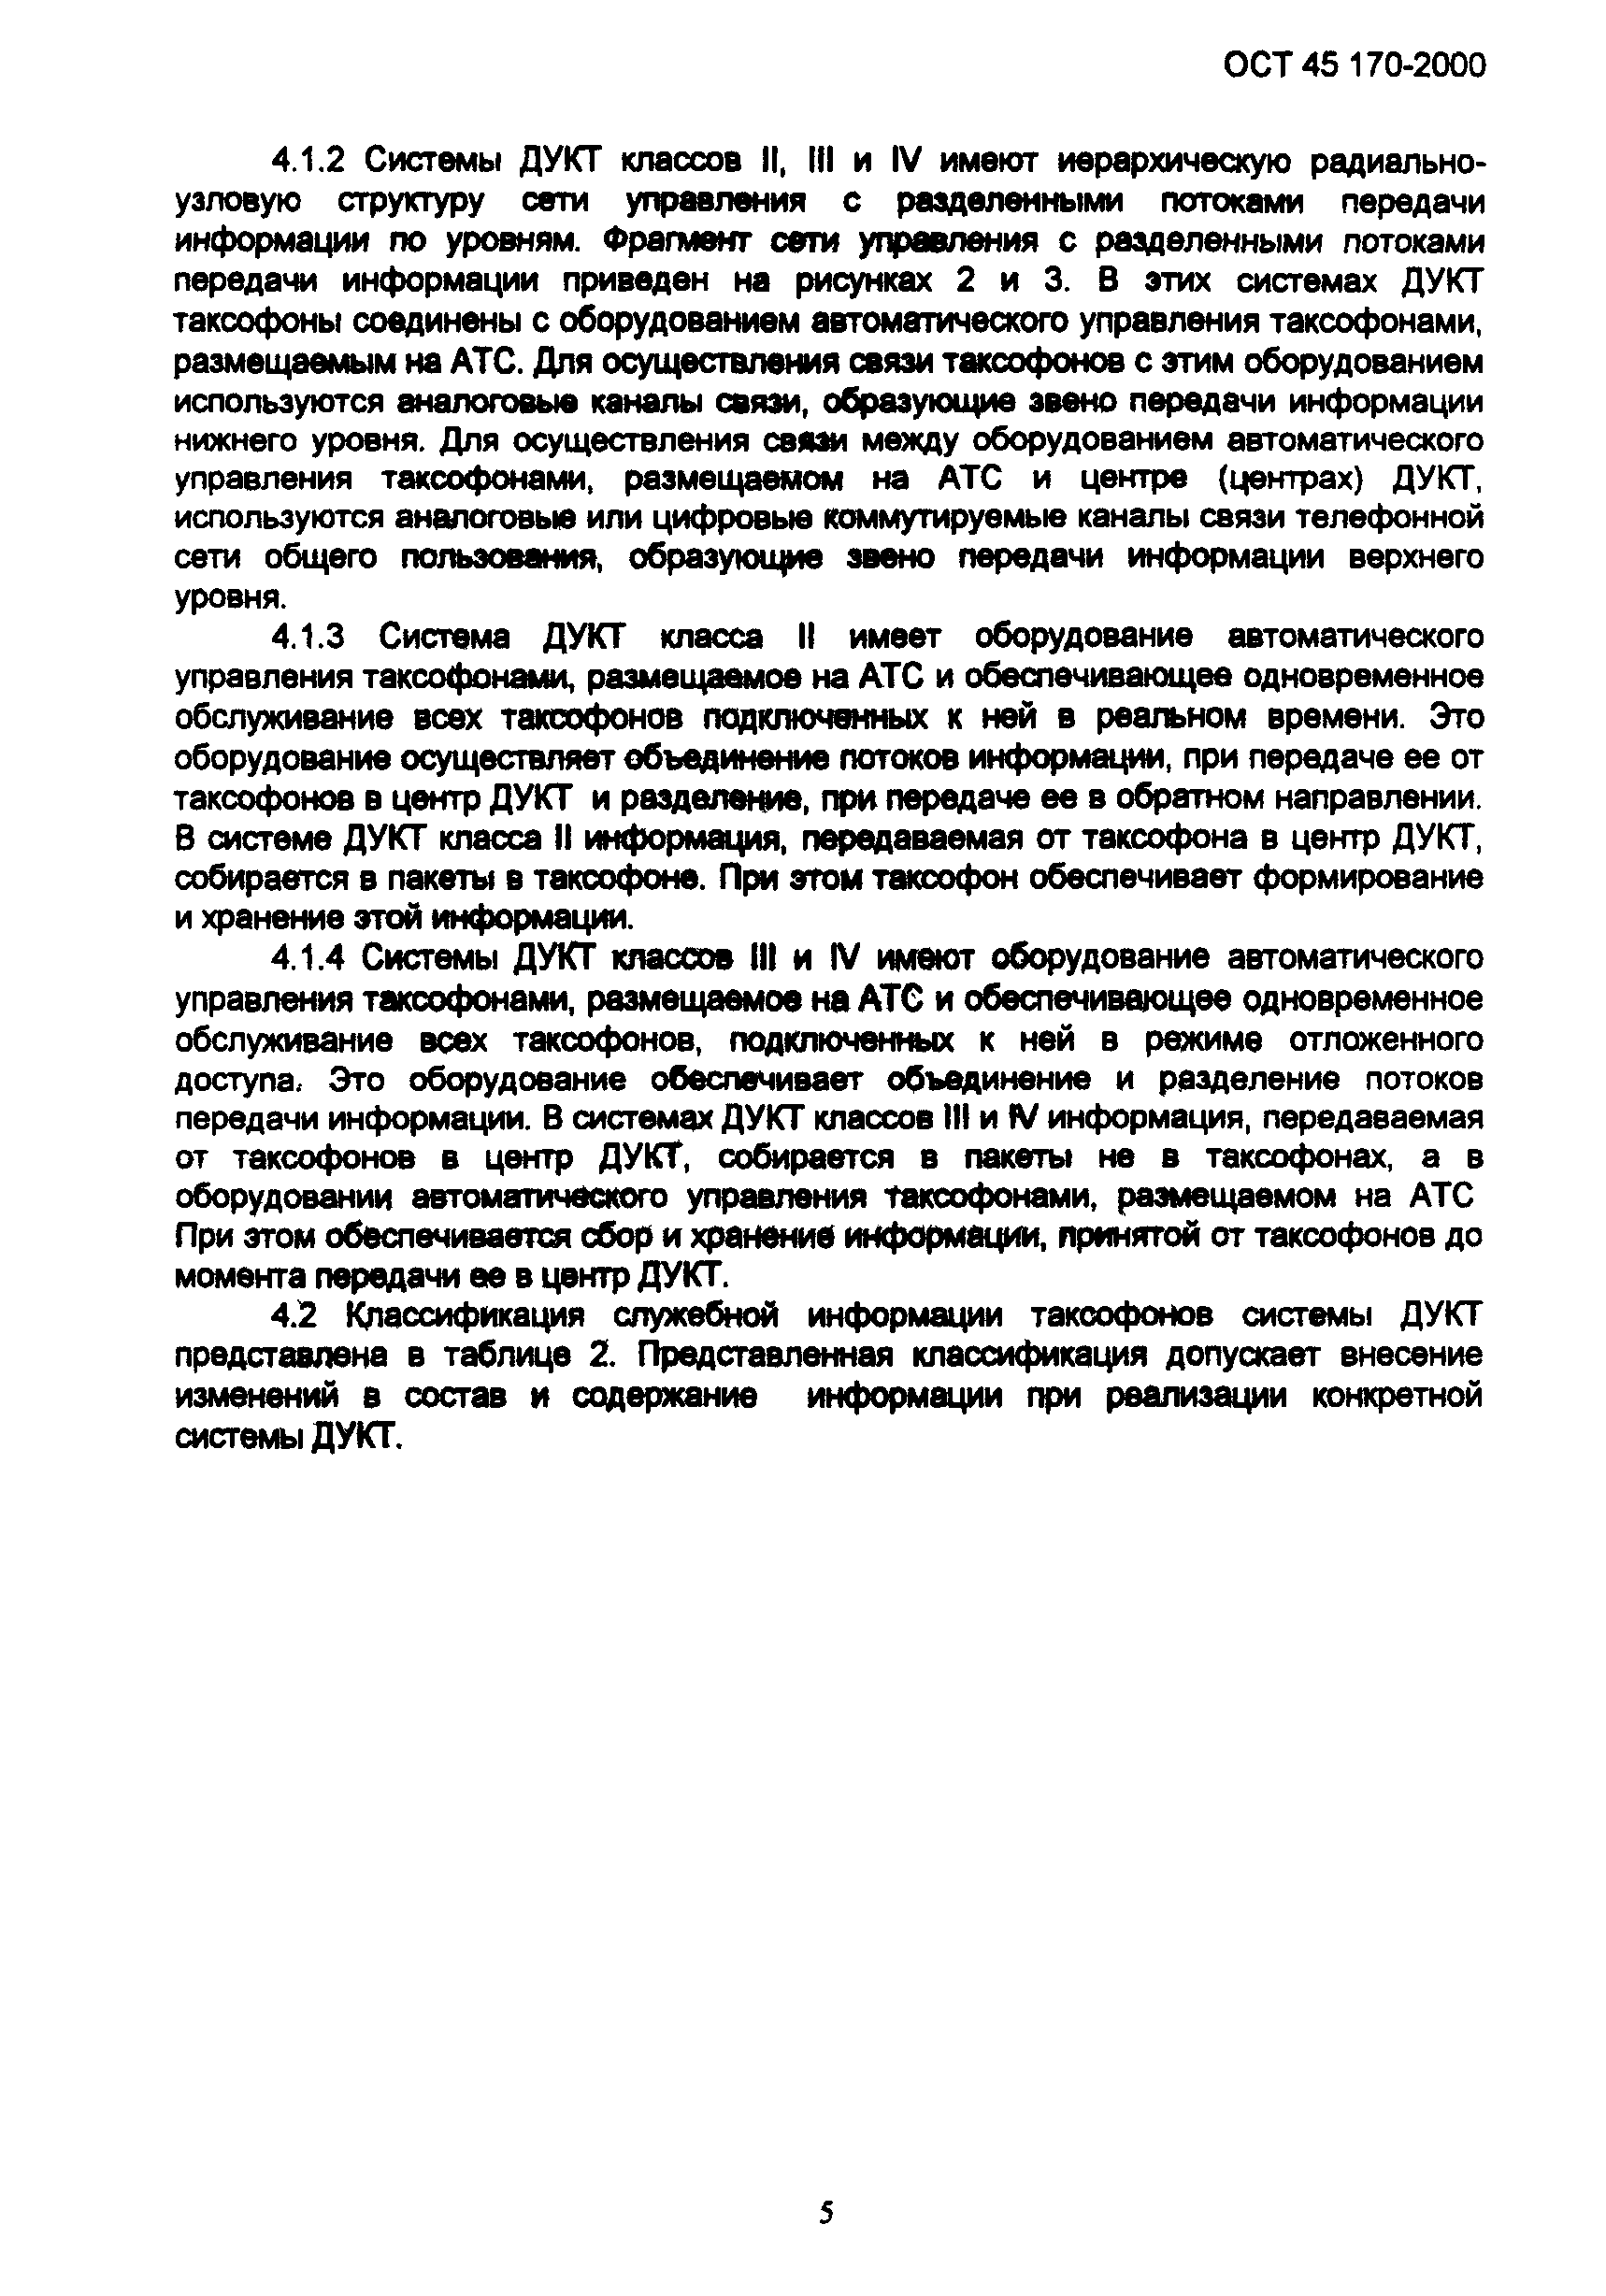 ОСТ 45.170-2000